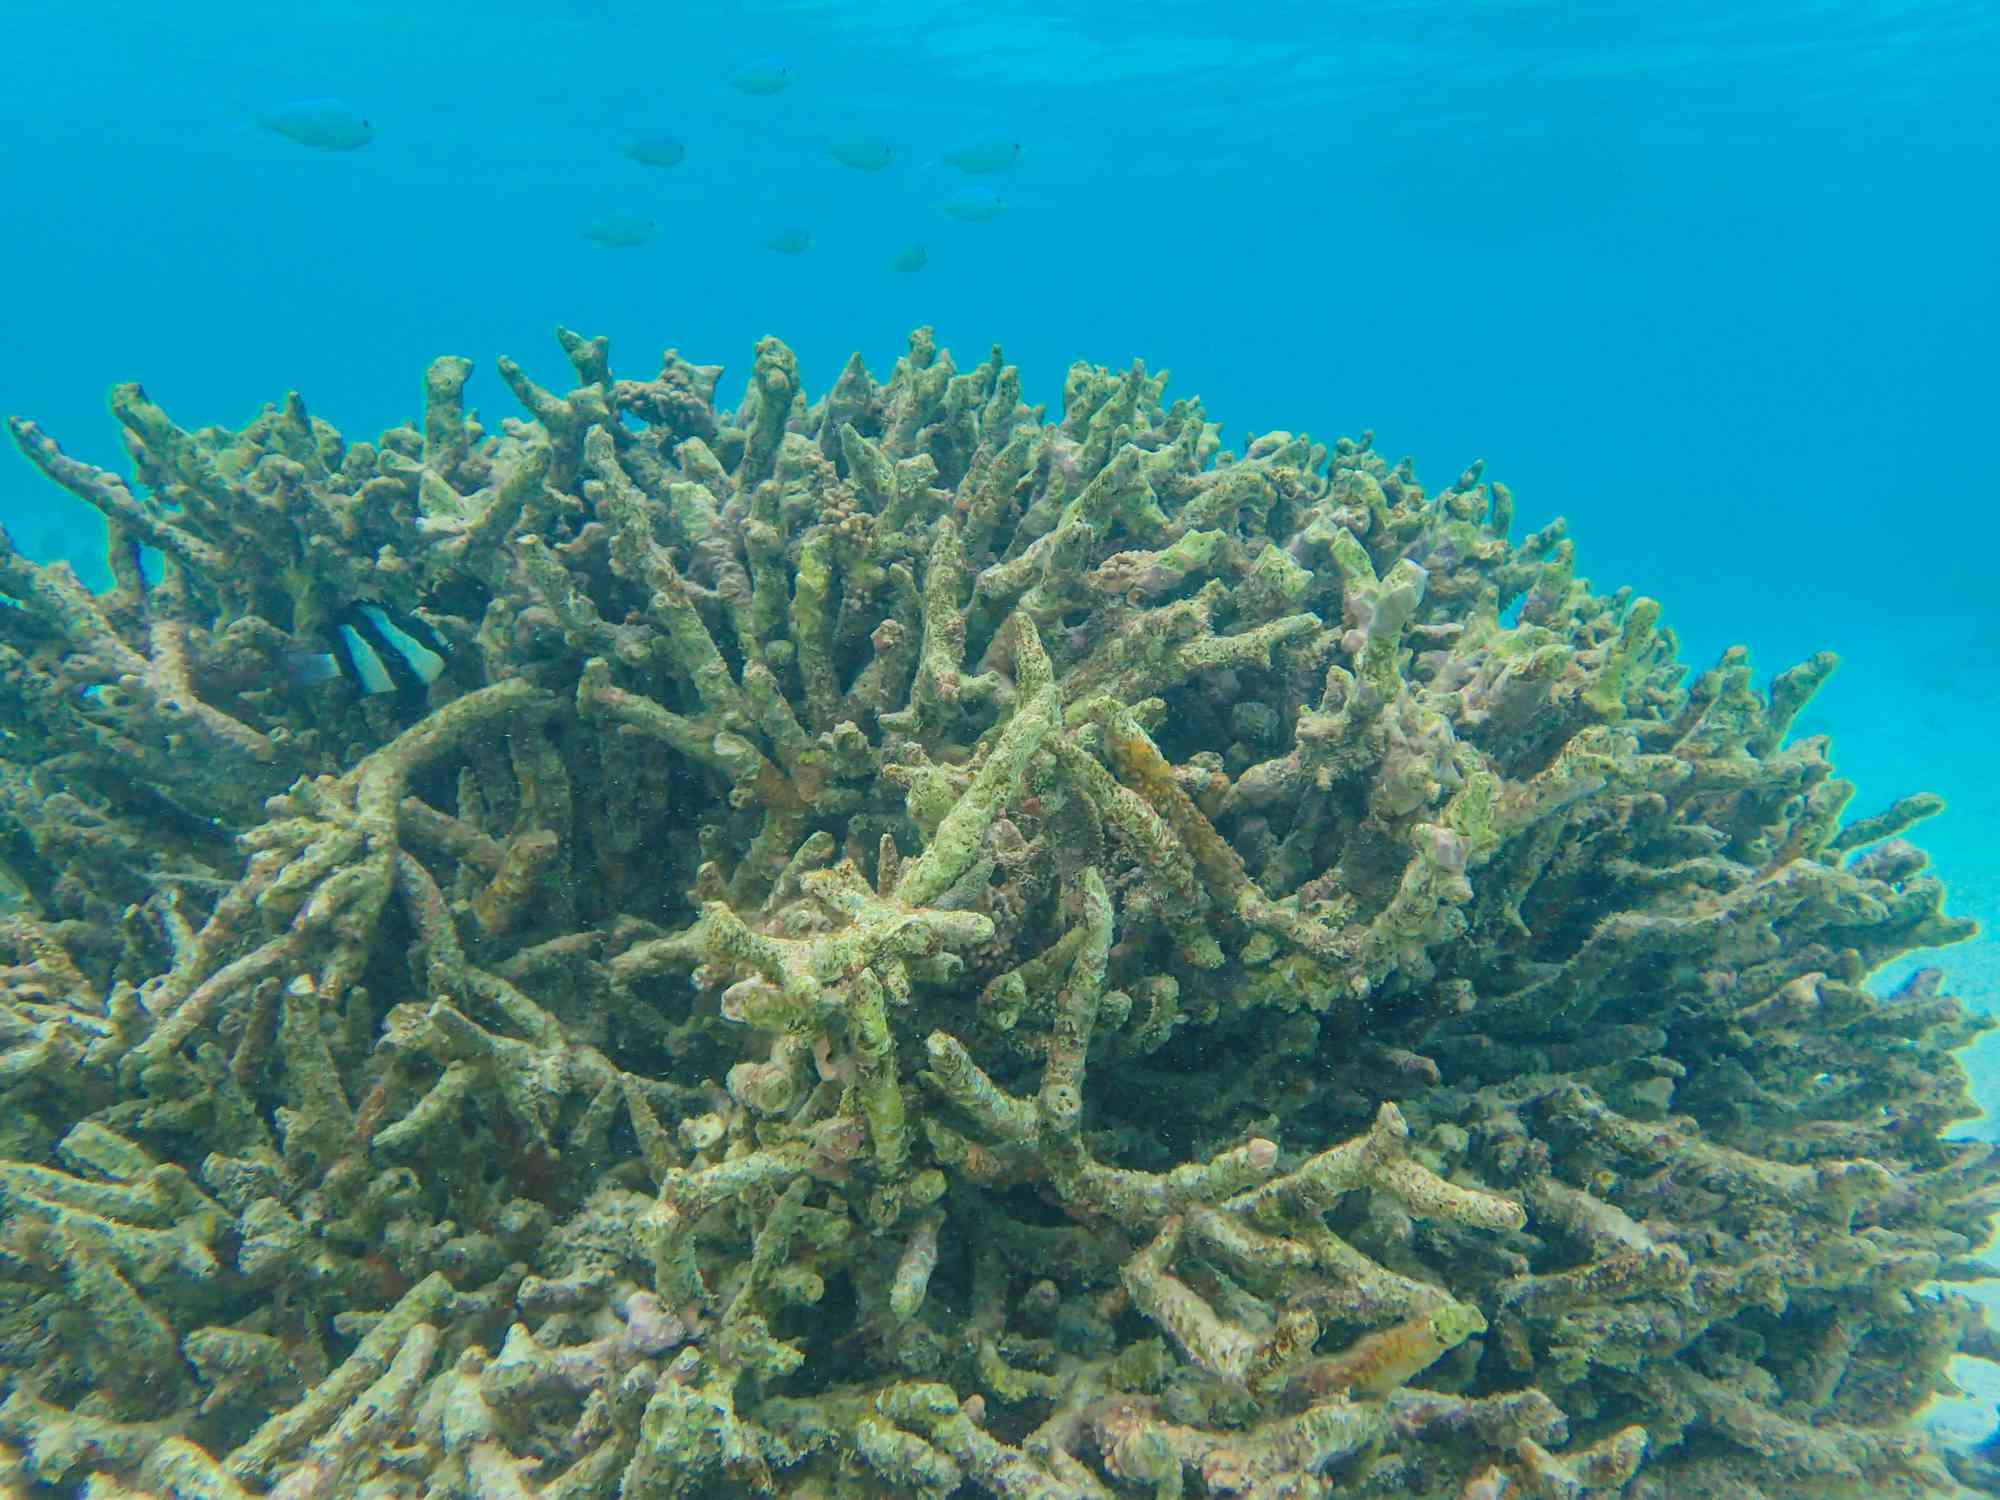 Un gran coral cubierto de algas de varios colores y formas